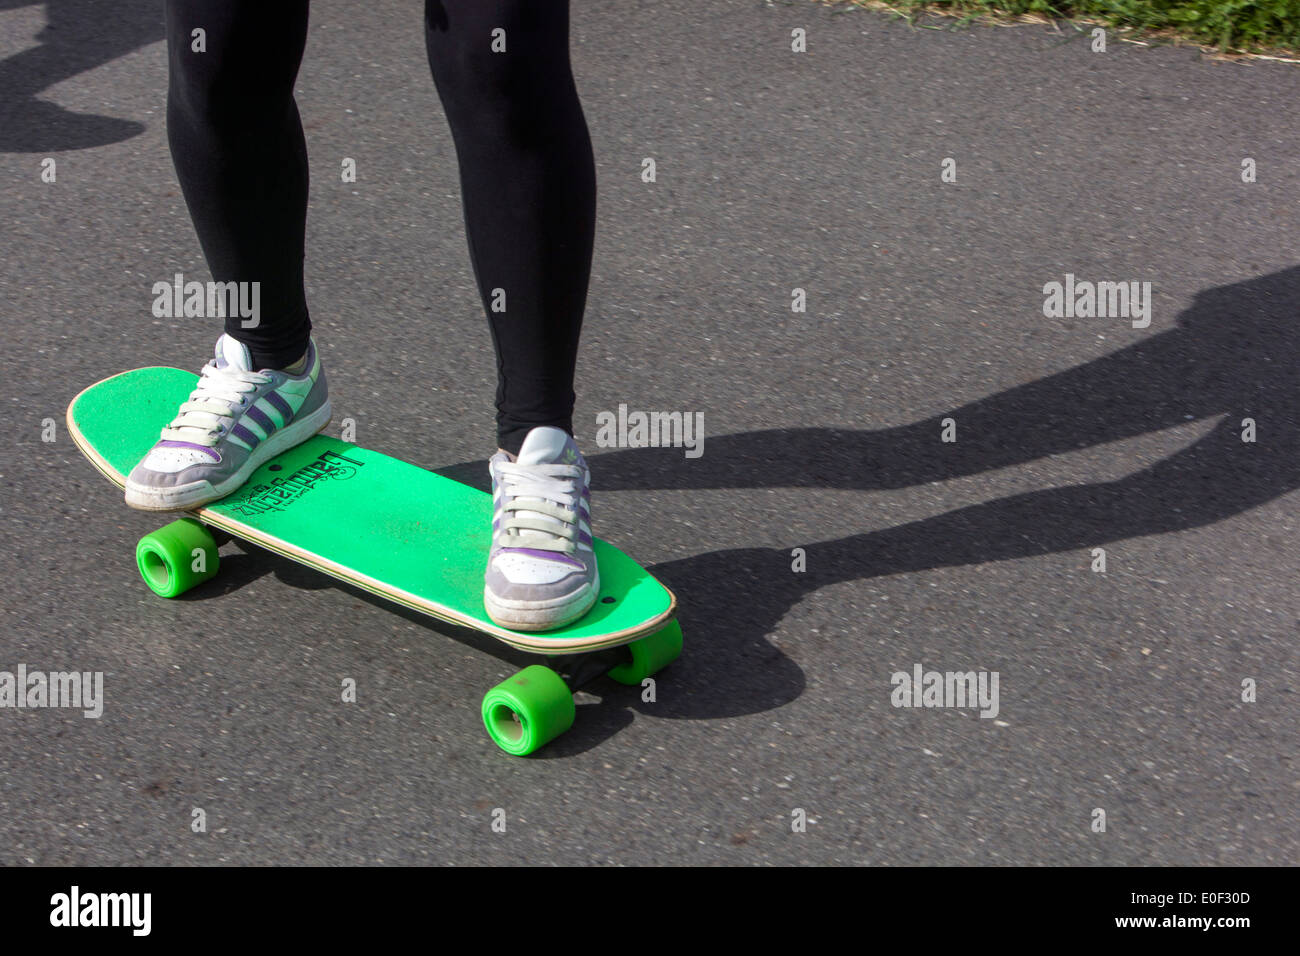 Man on skateboard Banque D'Images